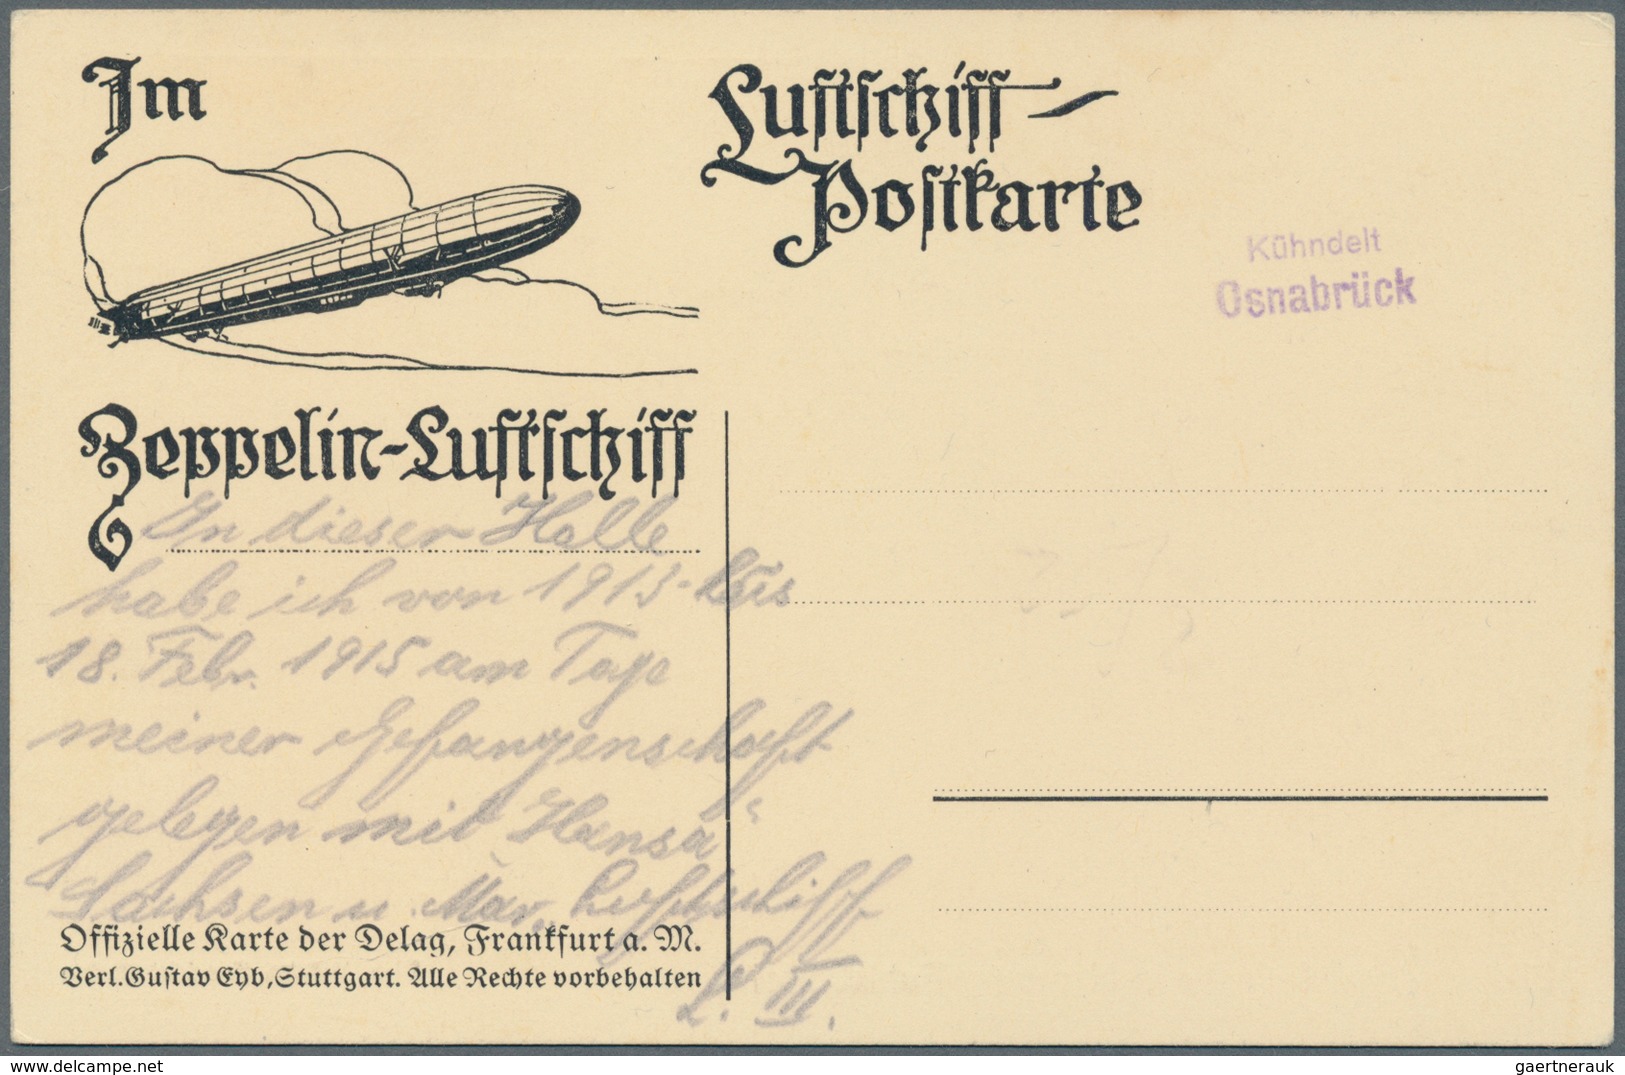 Zeppelinpost Deutschland: 1912, FUHLSBÜTTEL FLUGPLATZ 13.7.12, seltener Stempel auf Soldatenkarte o.